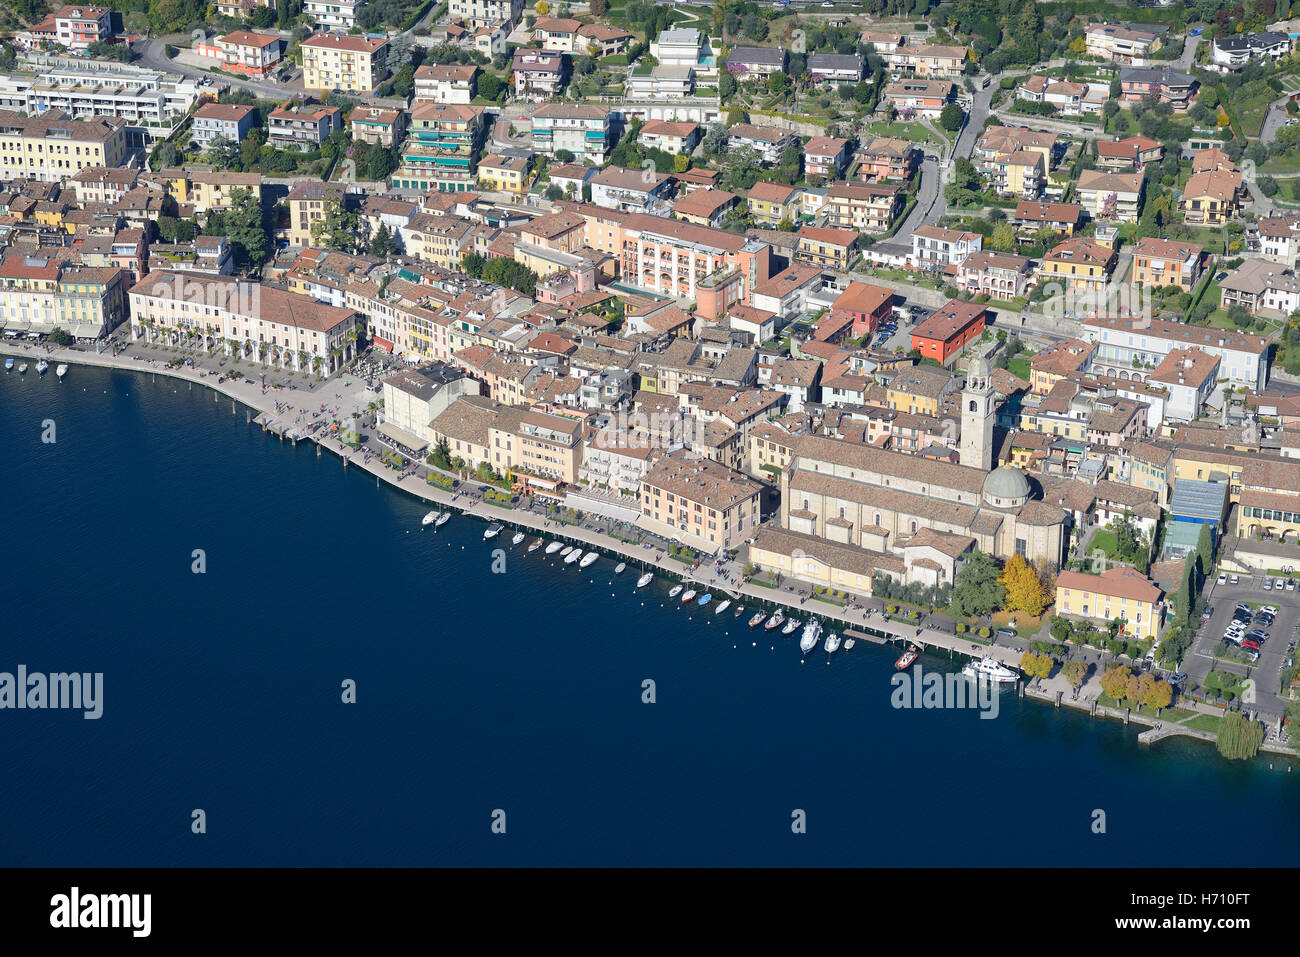 LUFTAUFNAHME. Malerische Stadt mit einer Reihe von Booten am Gardasee. Salò, Provinz Brescia, Lombardei, Italien. Stockfoto